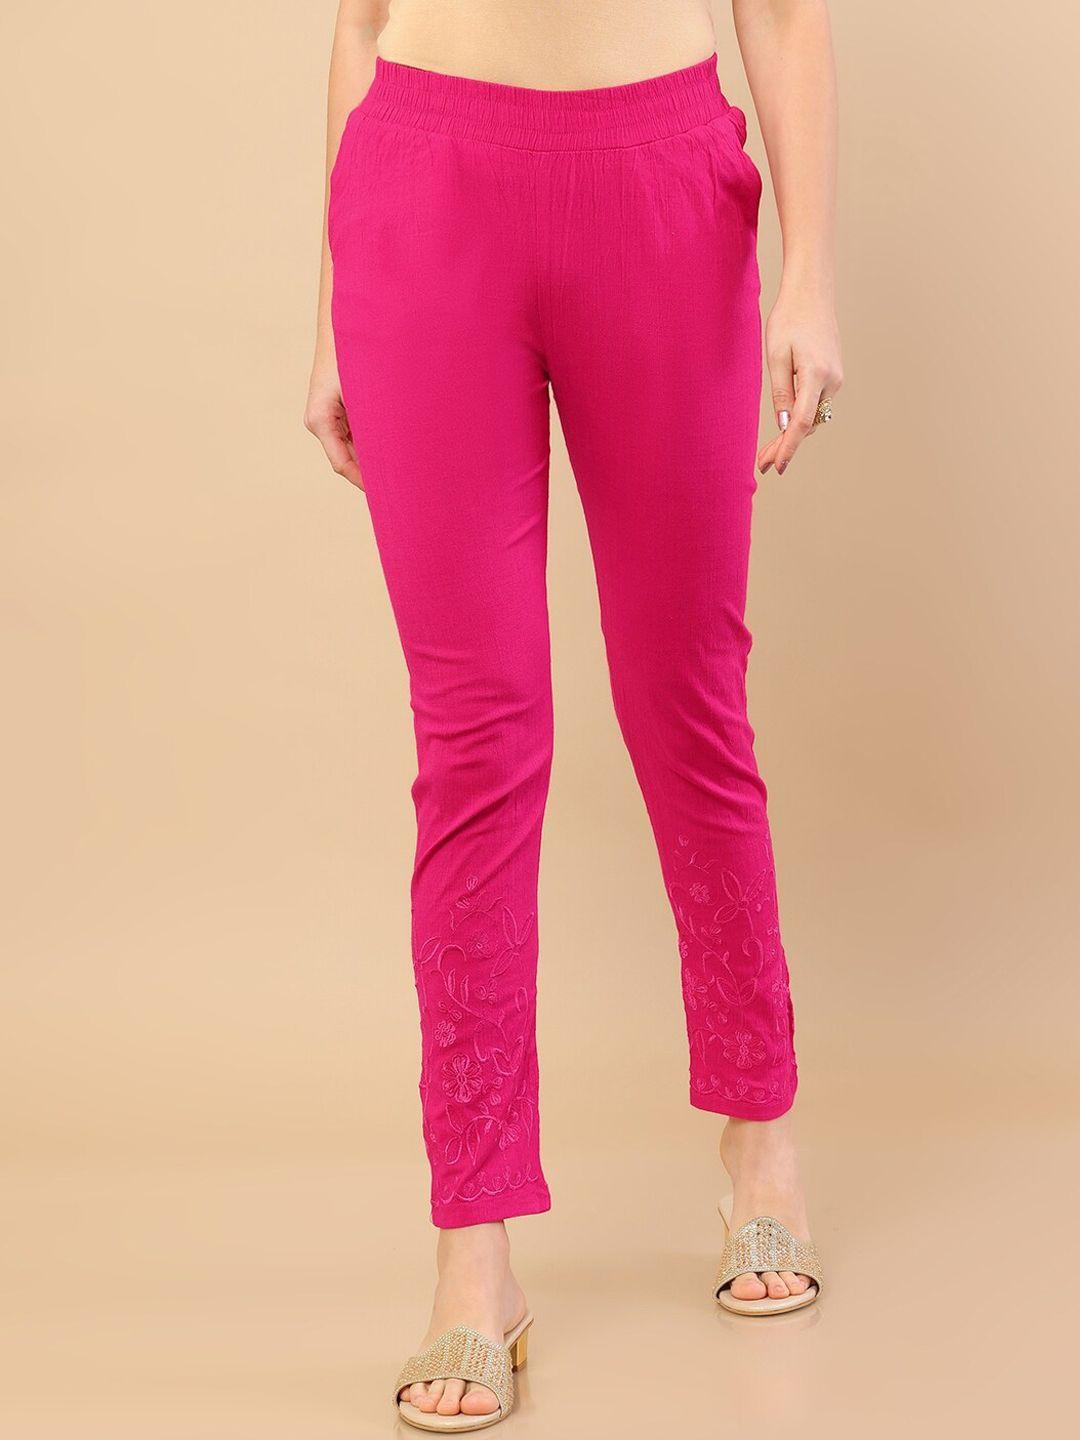 soch women pink jodhpuris trousers